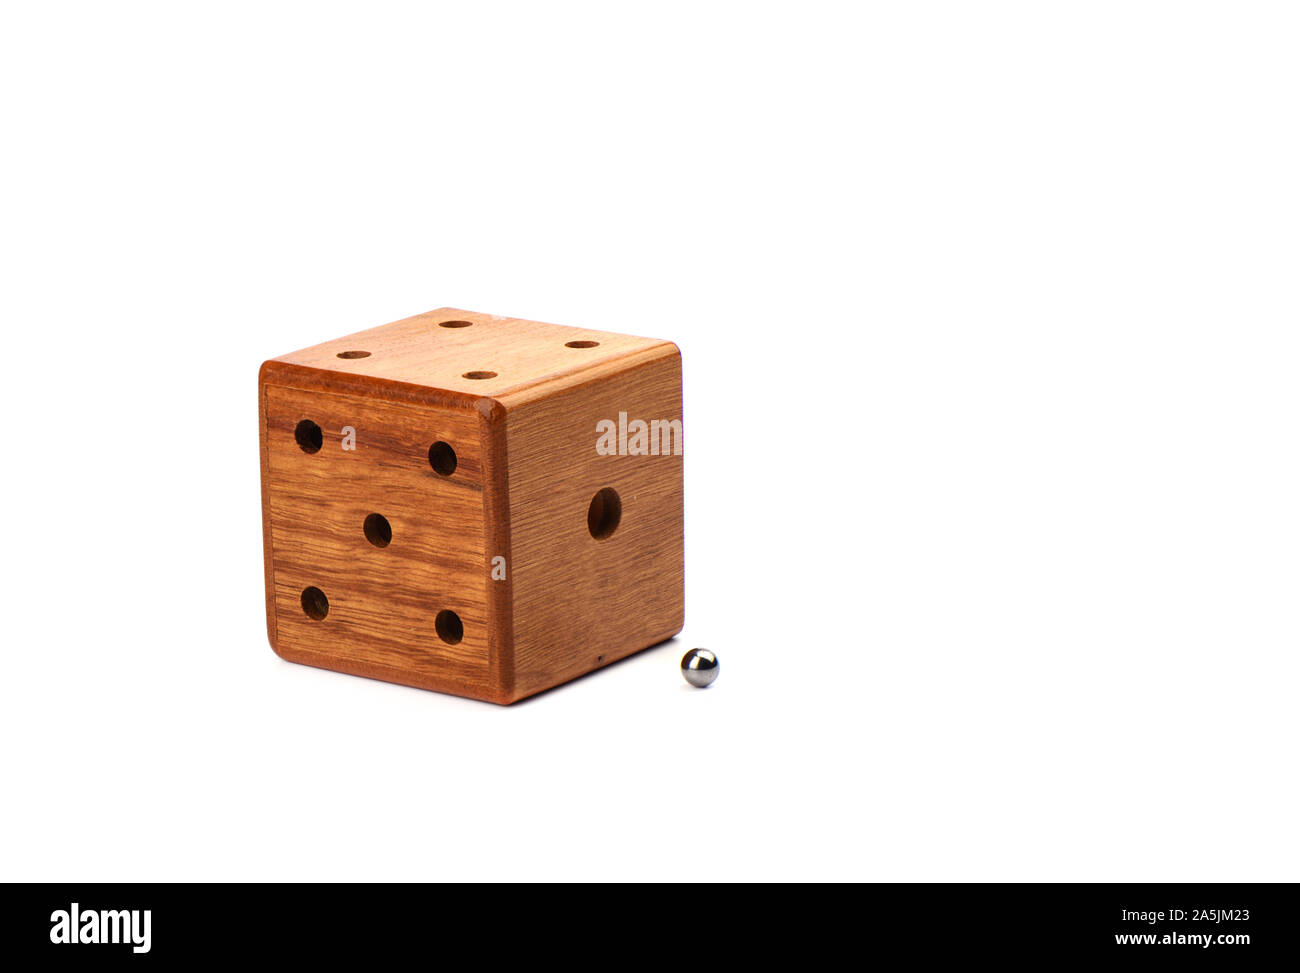 Cube magique de puzzle labyrinthe en trois dimensions. Cube de bois avec une bille de métal sur un fond blanc. Puzzle concept. Banque D'Images